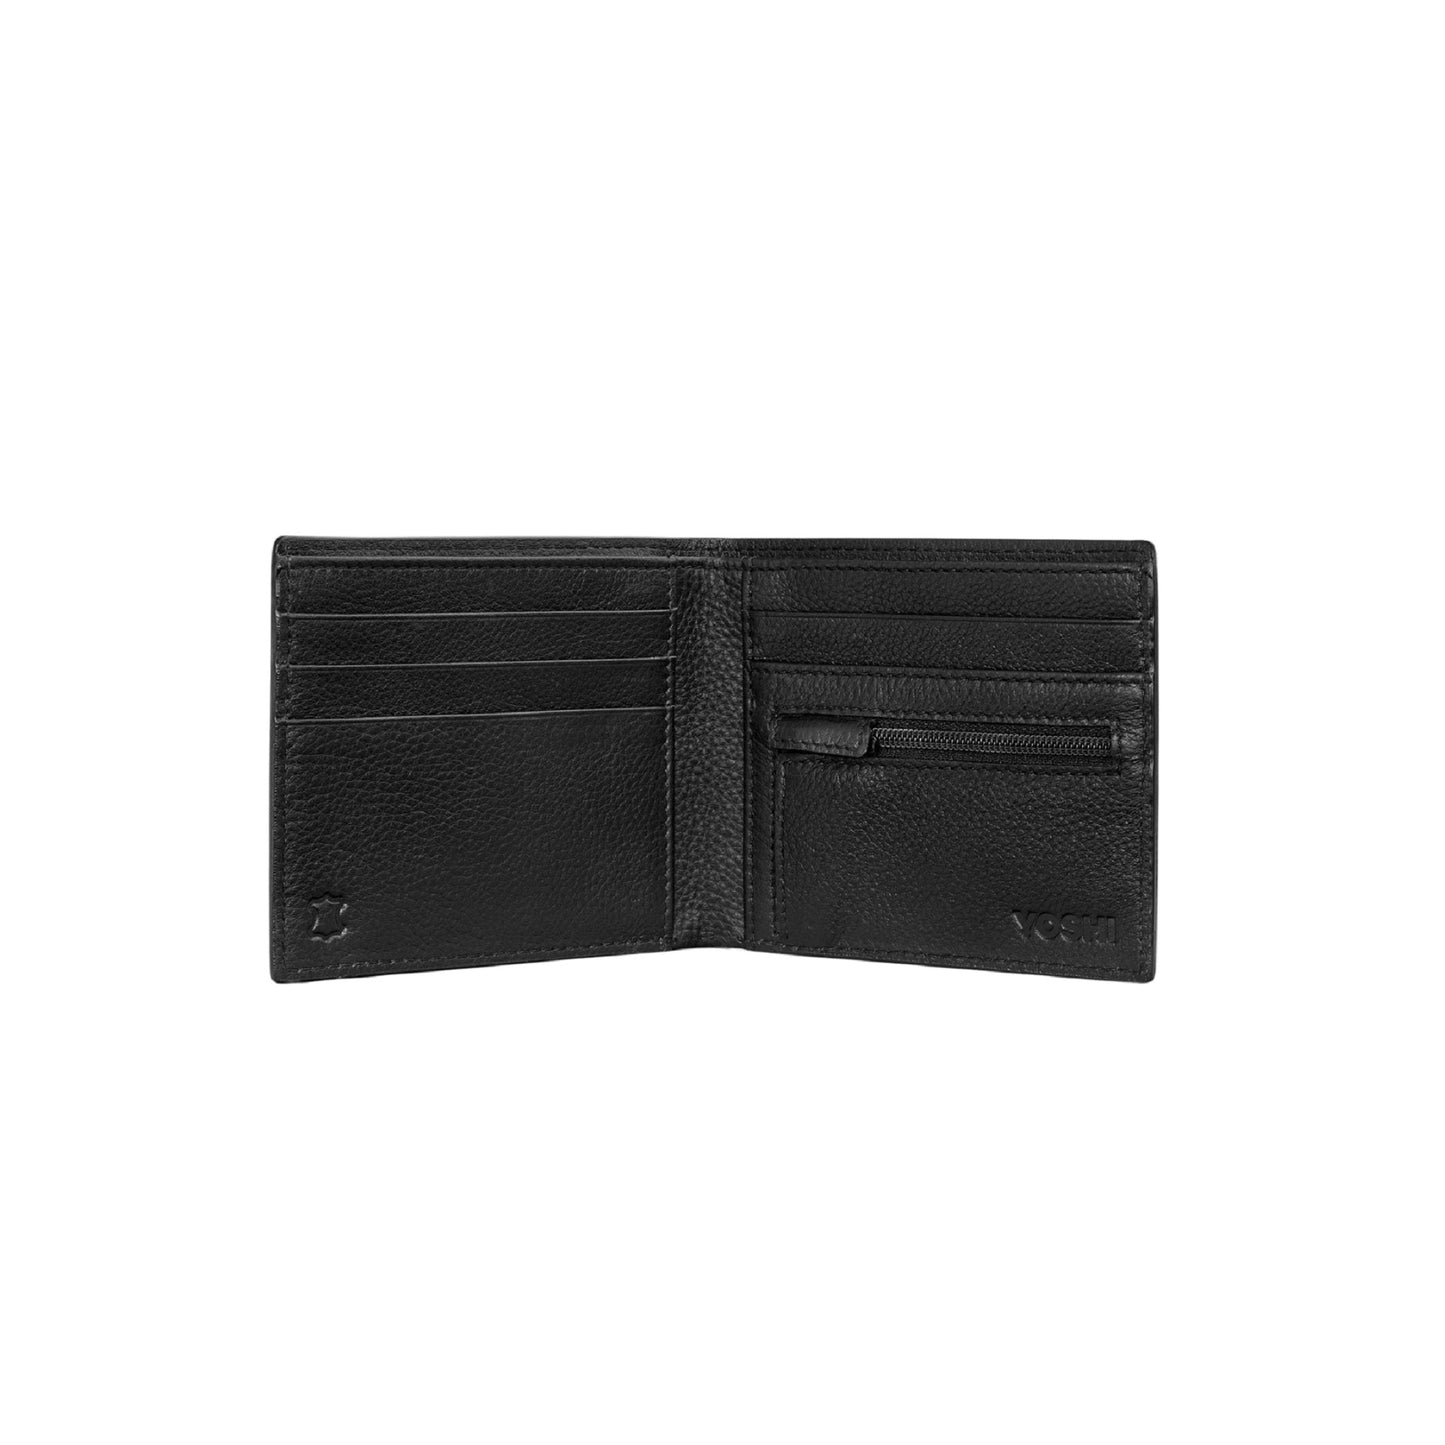 Be Kind Rewind Men's Leather Wallet - Black